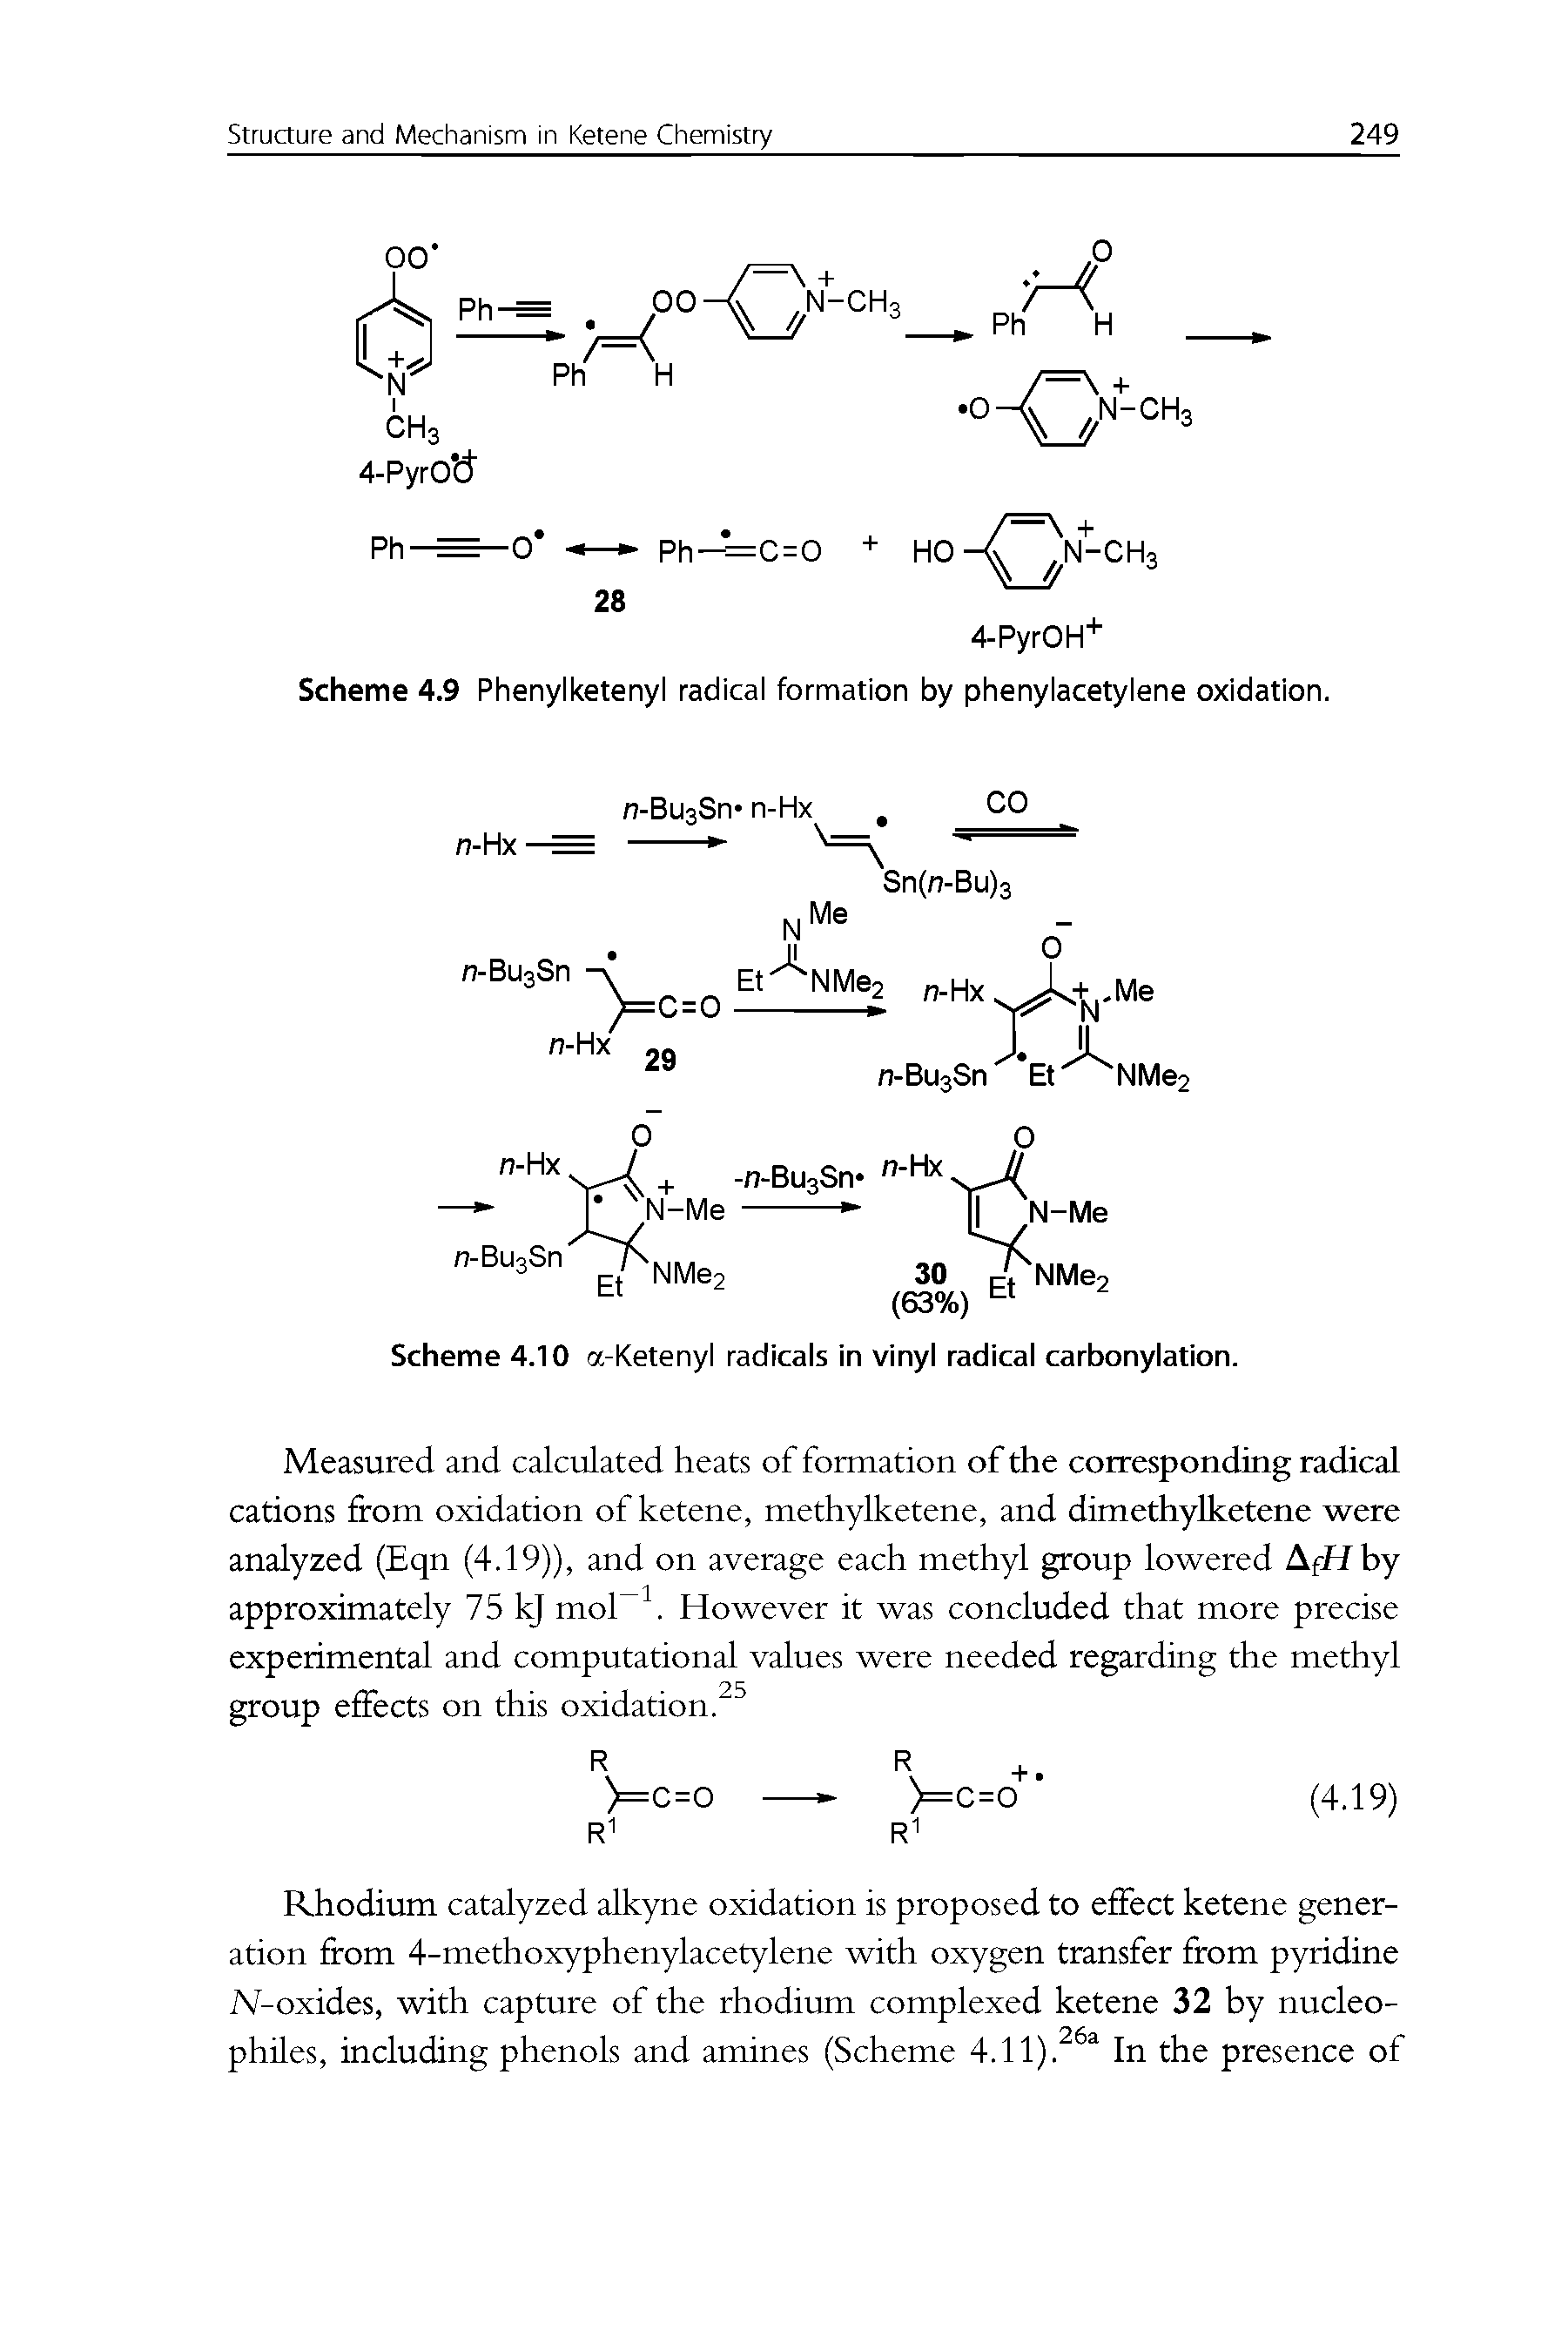 Scheme 4.9 Phenylketenyl radical formation by phenylacetylene oxidation.